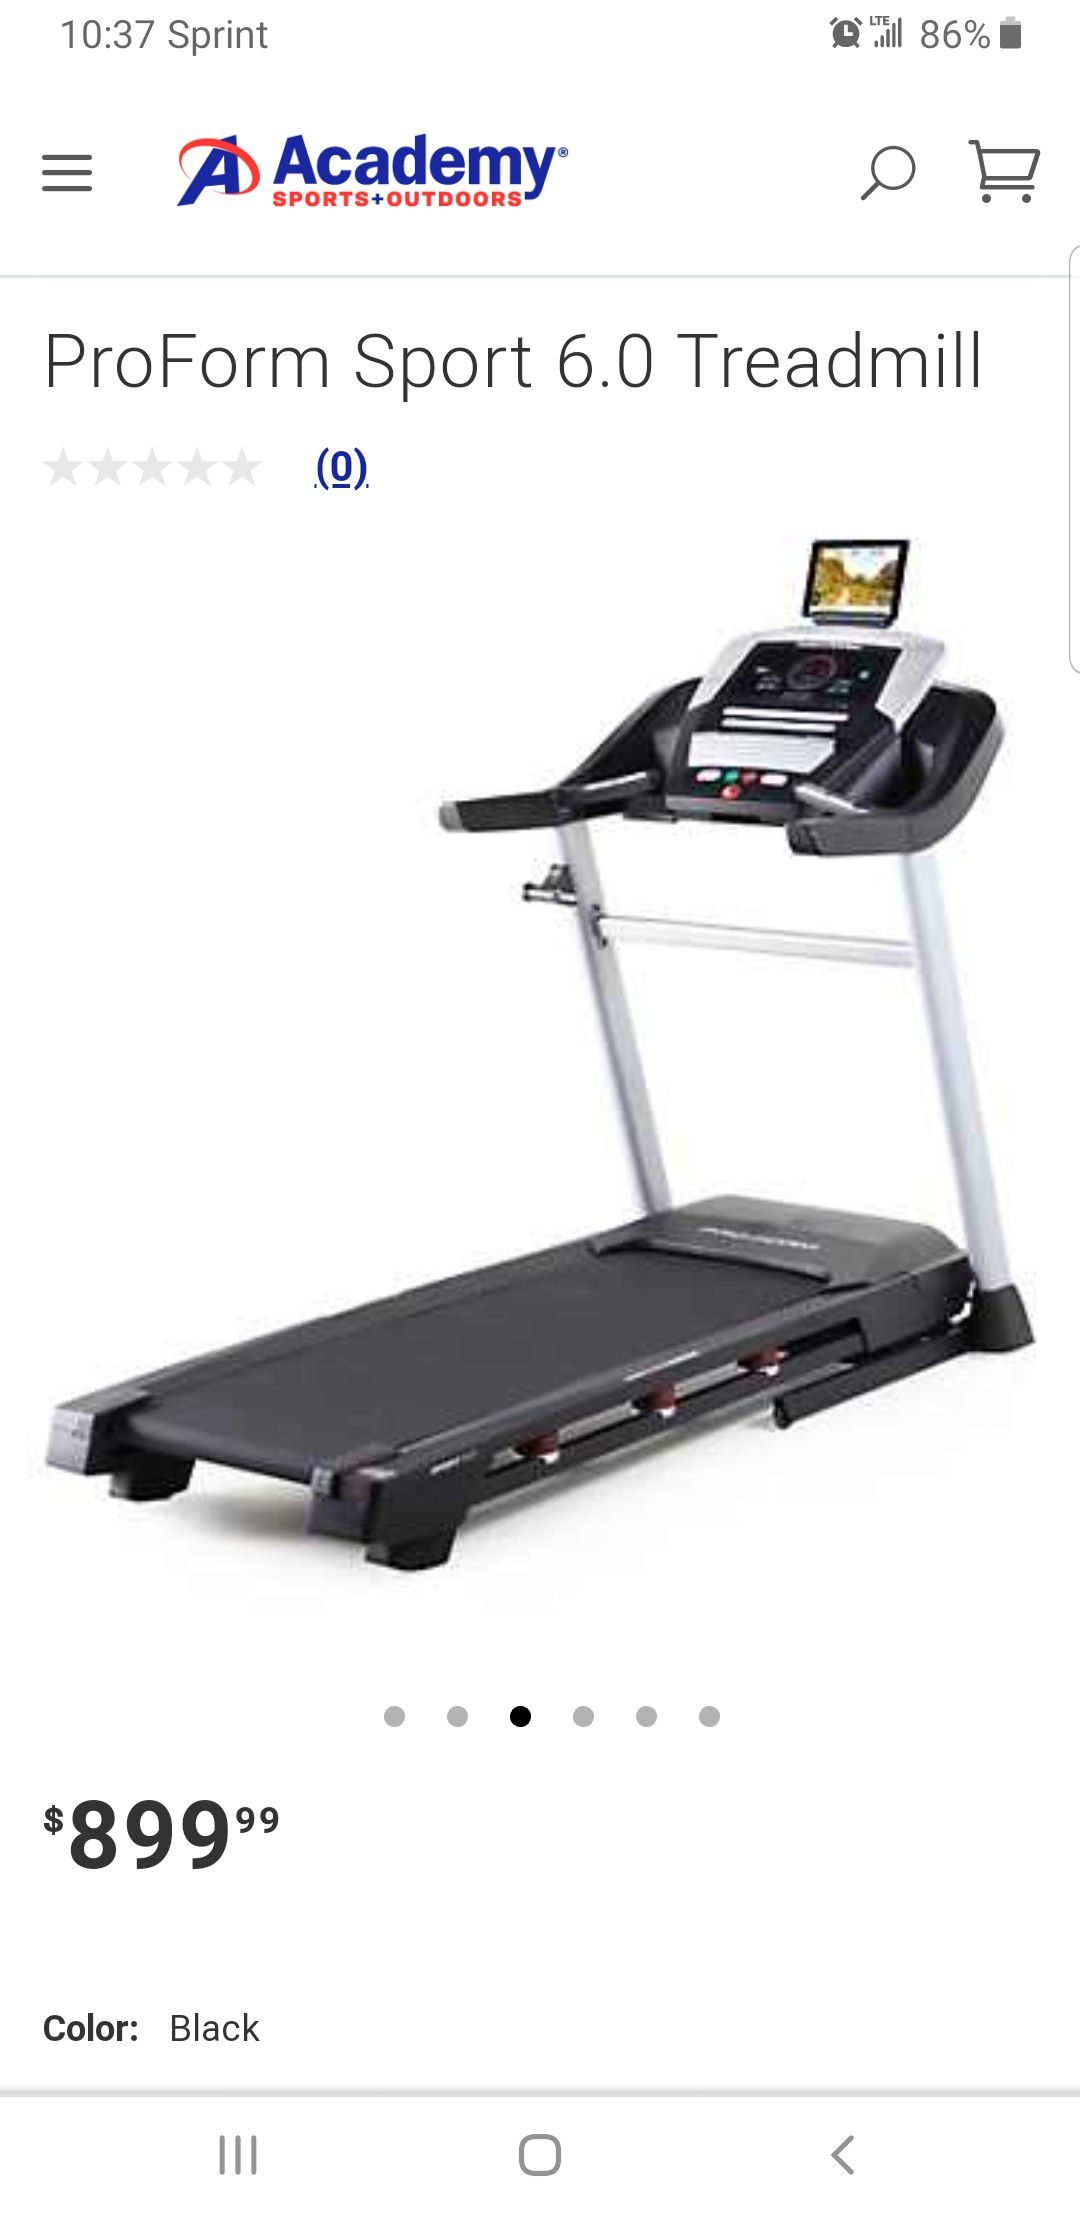 ProForm sport 6.0 treadmill